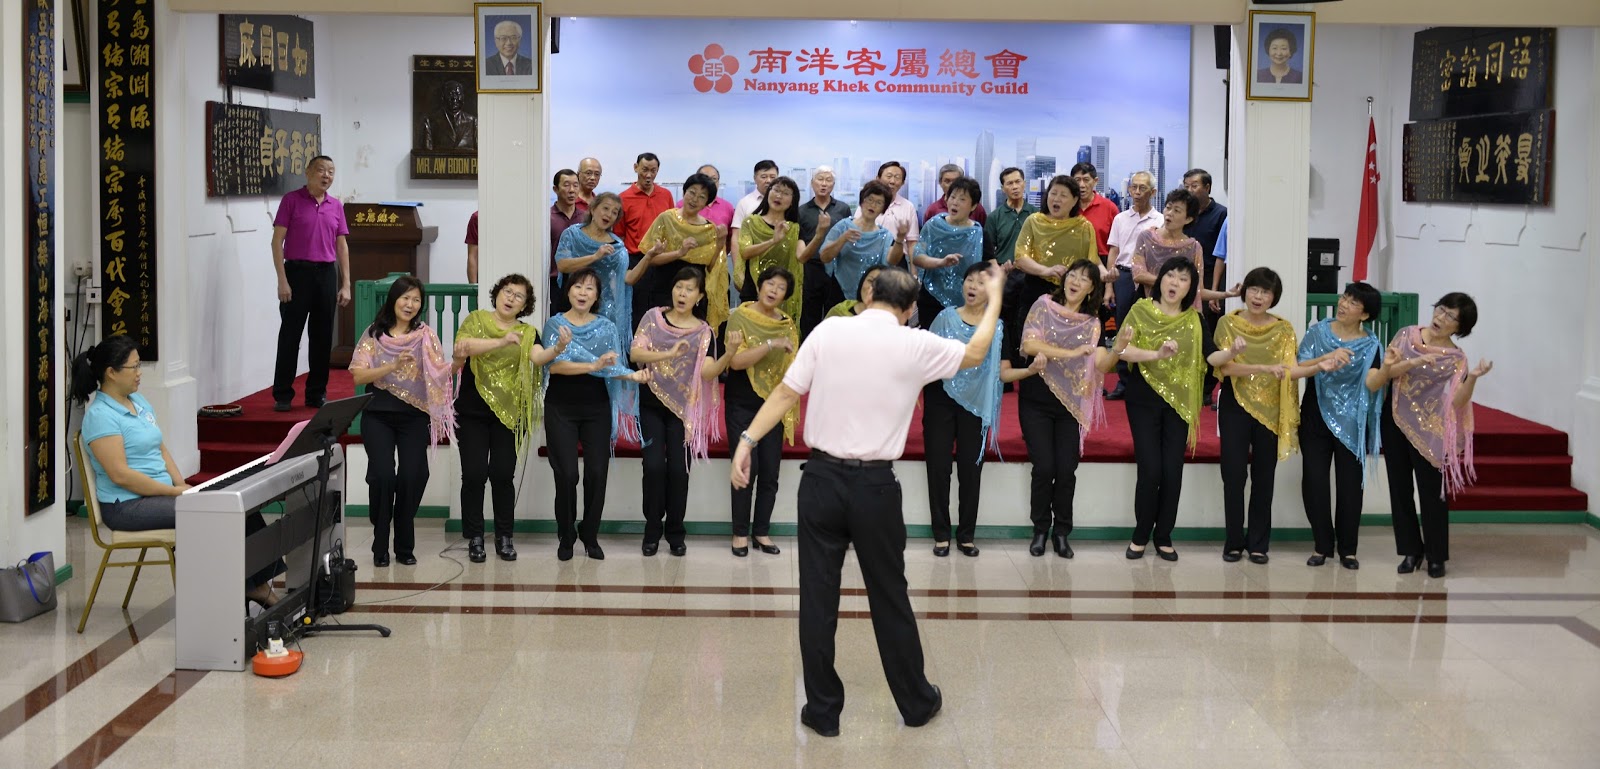 新加坡南洋客属总会合唱团 16年5月22日在客总礼堂举行 以歌会友 演出总练习